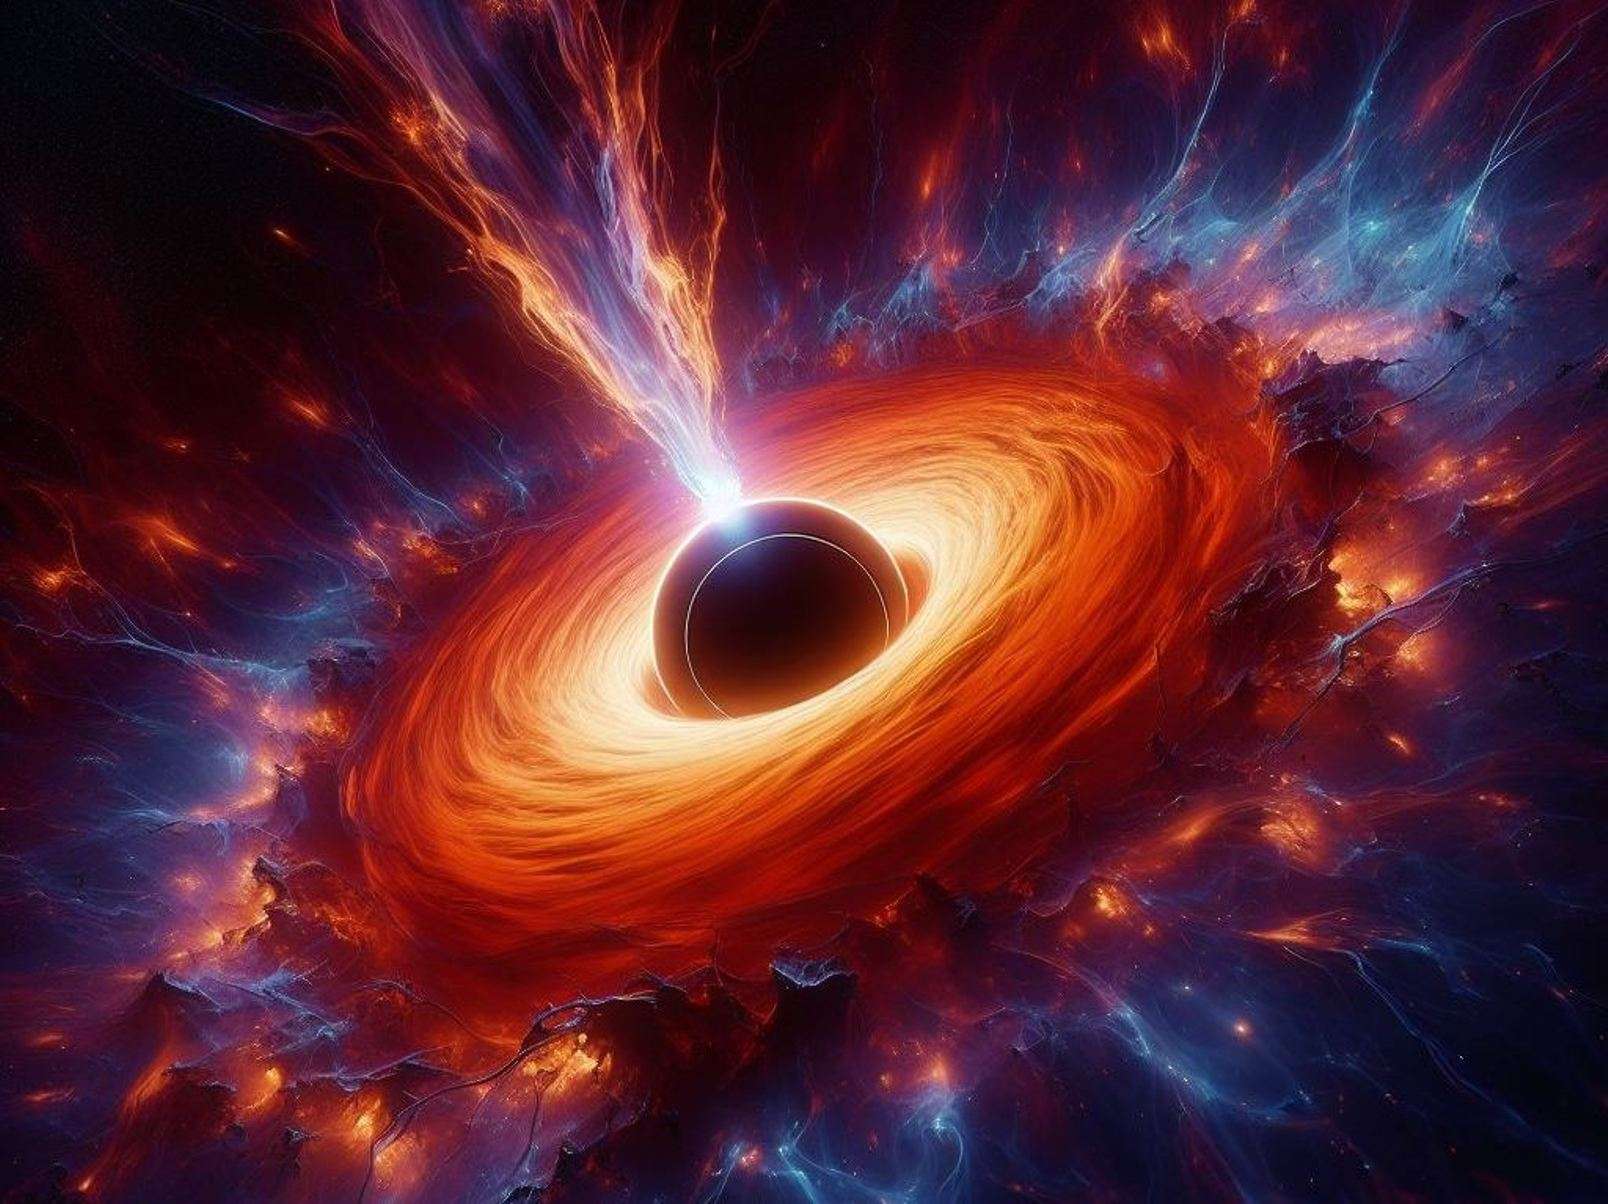 A explosão gigante deste buraco negro criou 19 aglomerados de estrelas gigantes!